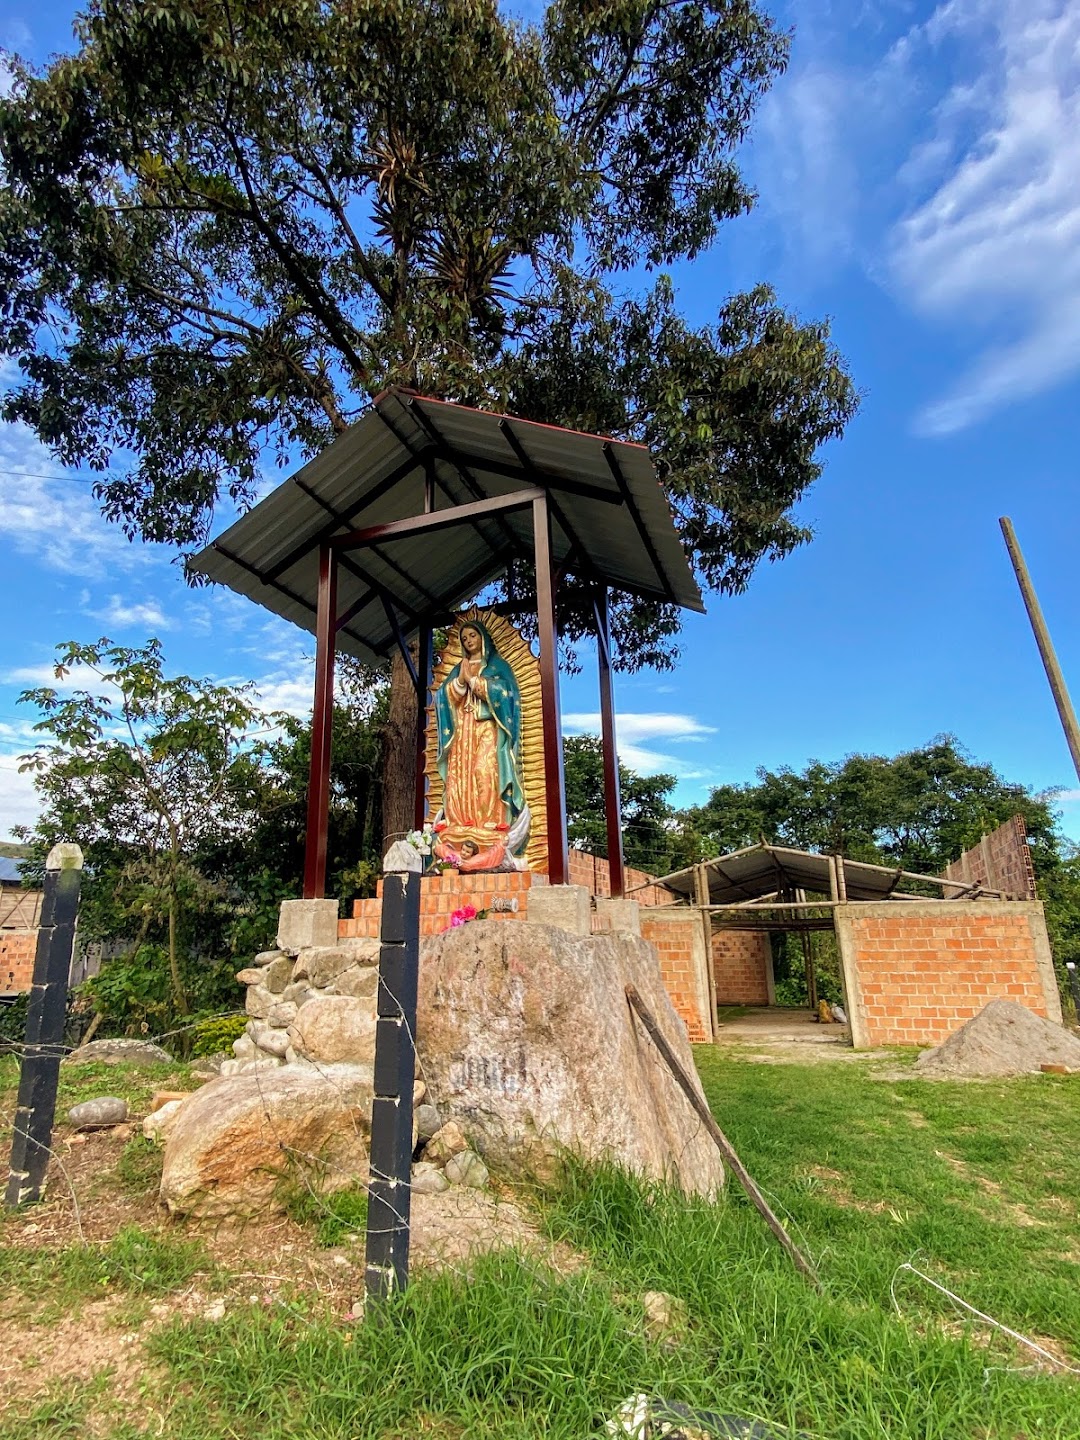 Santuario de Nuestra Señora La Virgen de Guadalupe